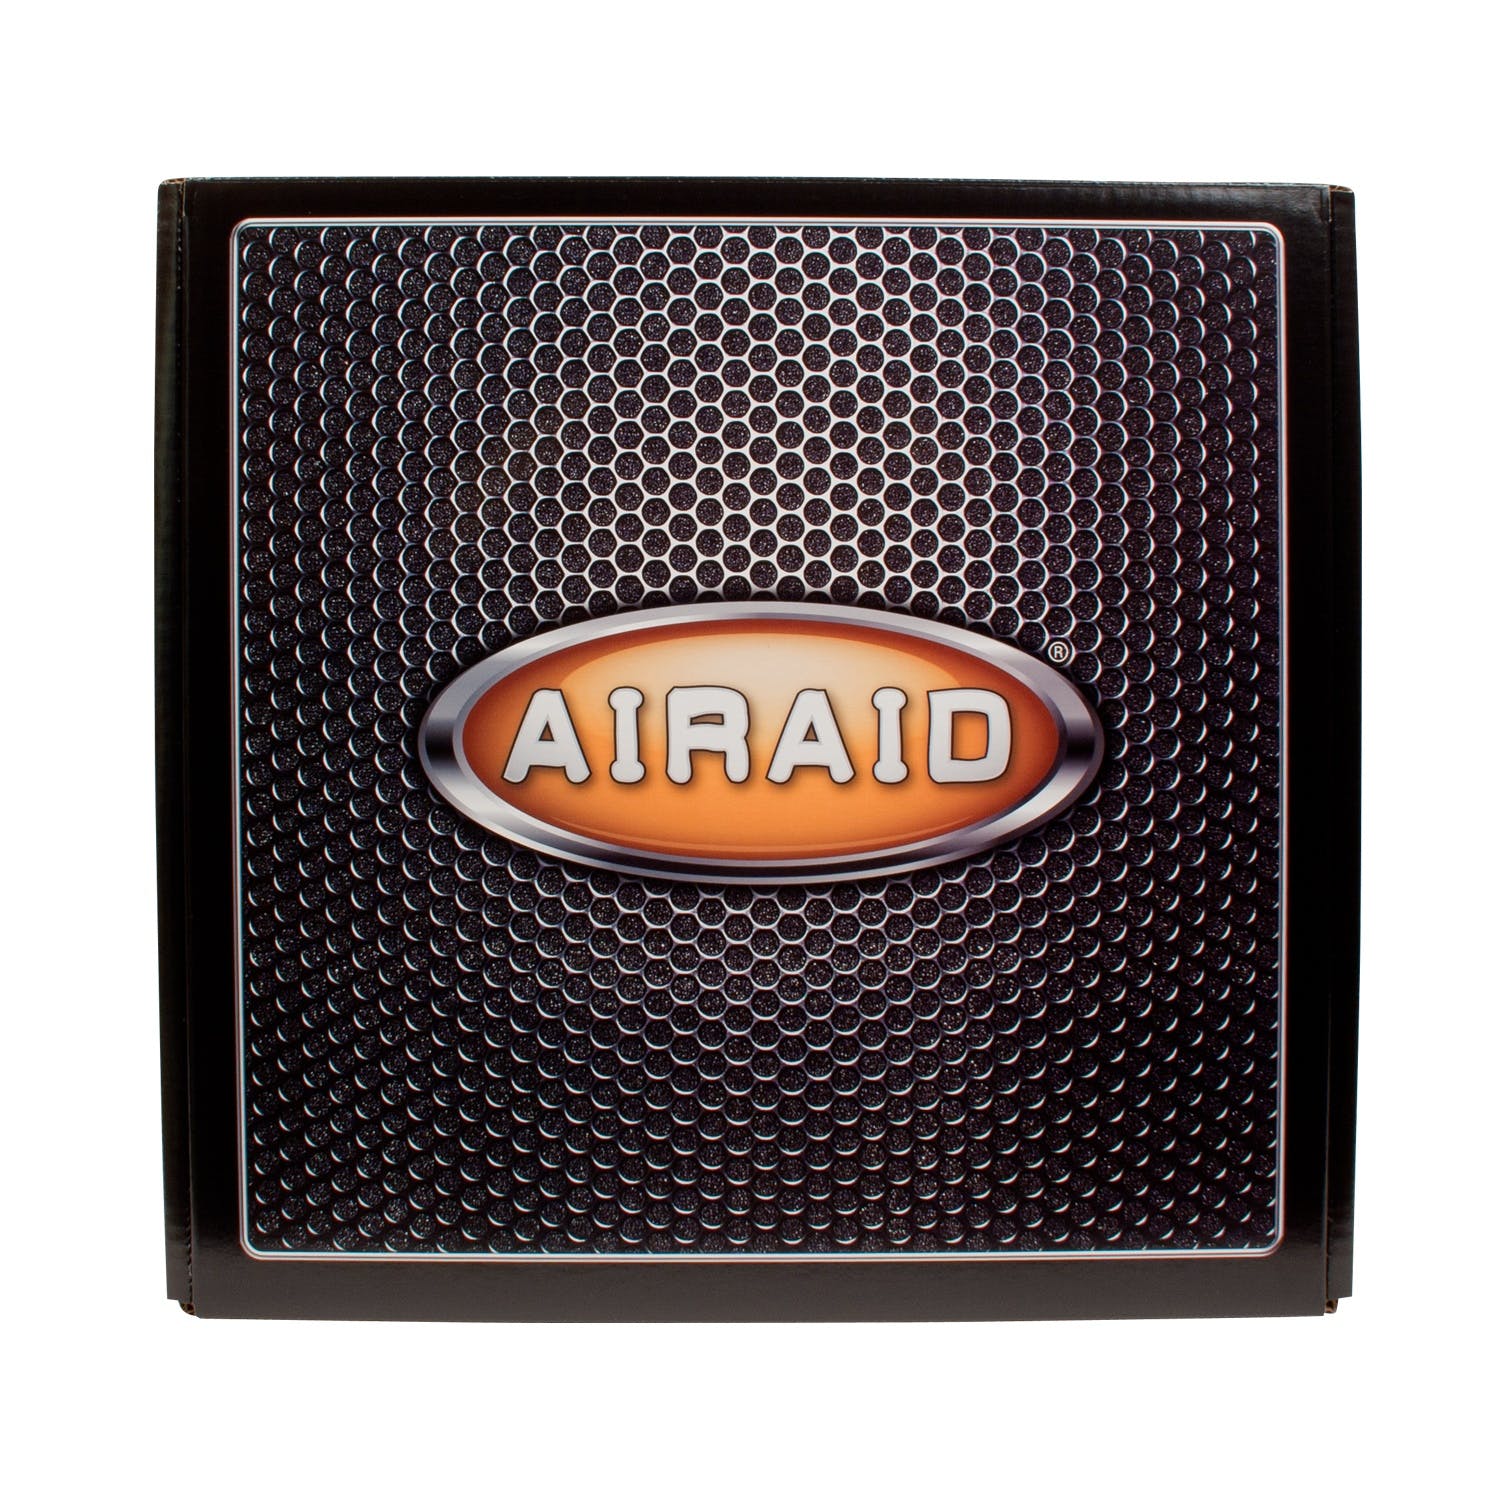 AIRAID 201-247 Performance Air Intake System